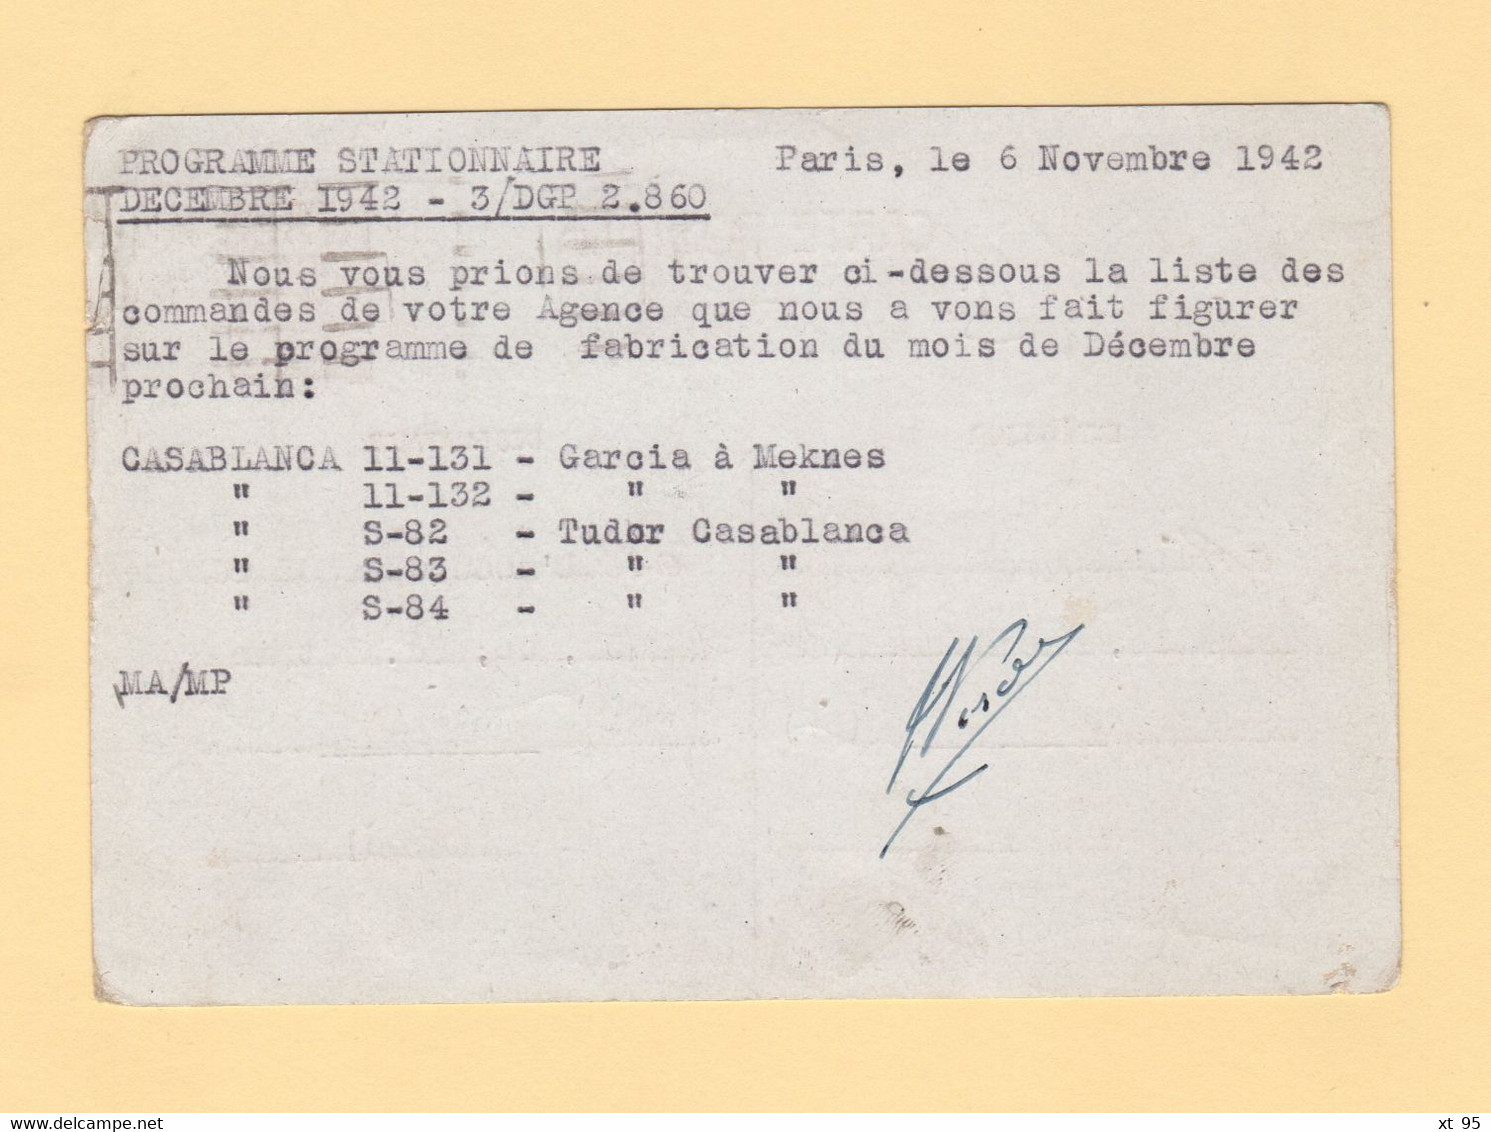 Relations Suspendues - Retour A L Envoyeur - 9 Dec 1942 - Paris Destination Maroc - 2. Weltkrieg 1939-1945